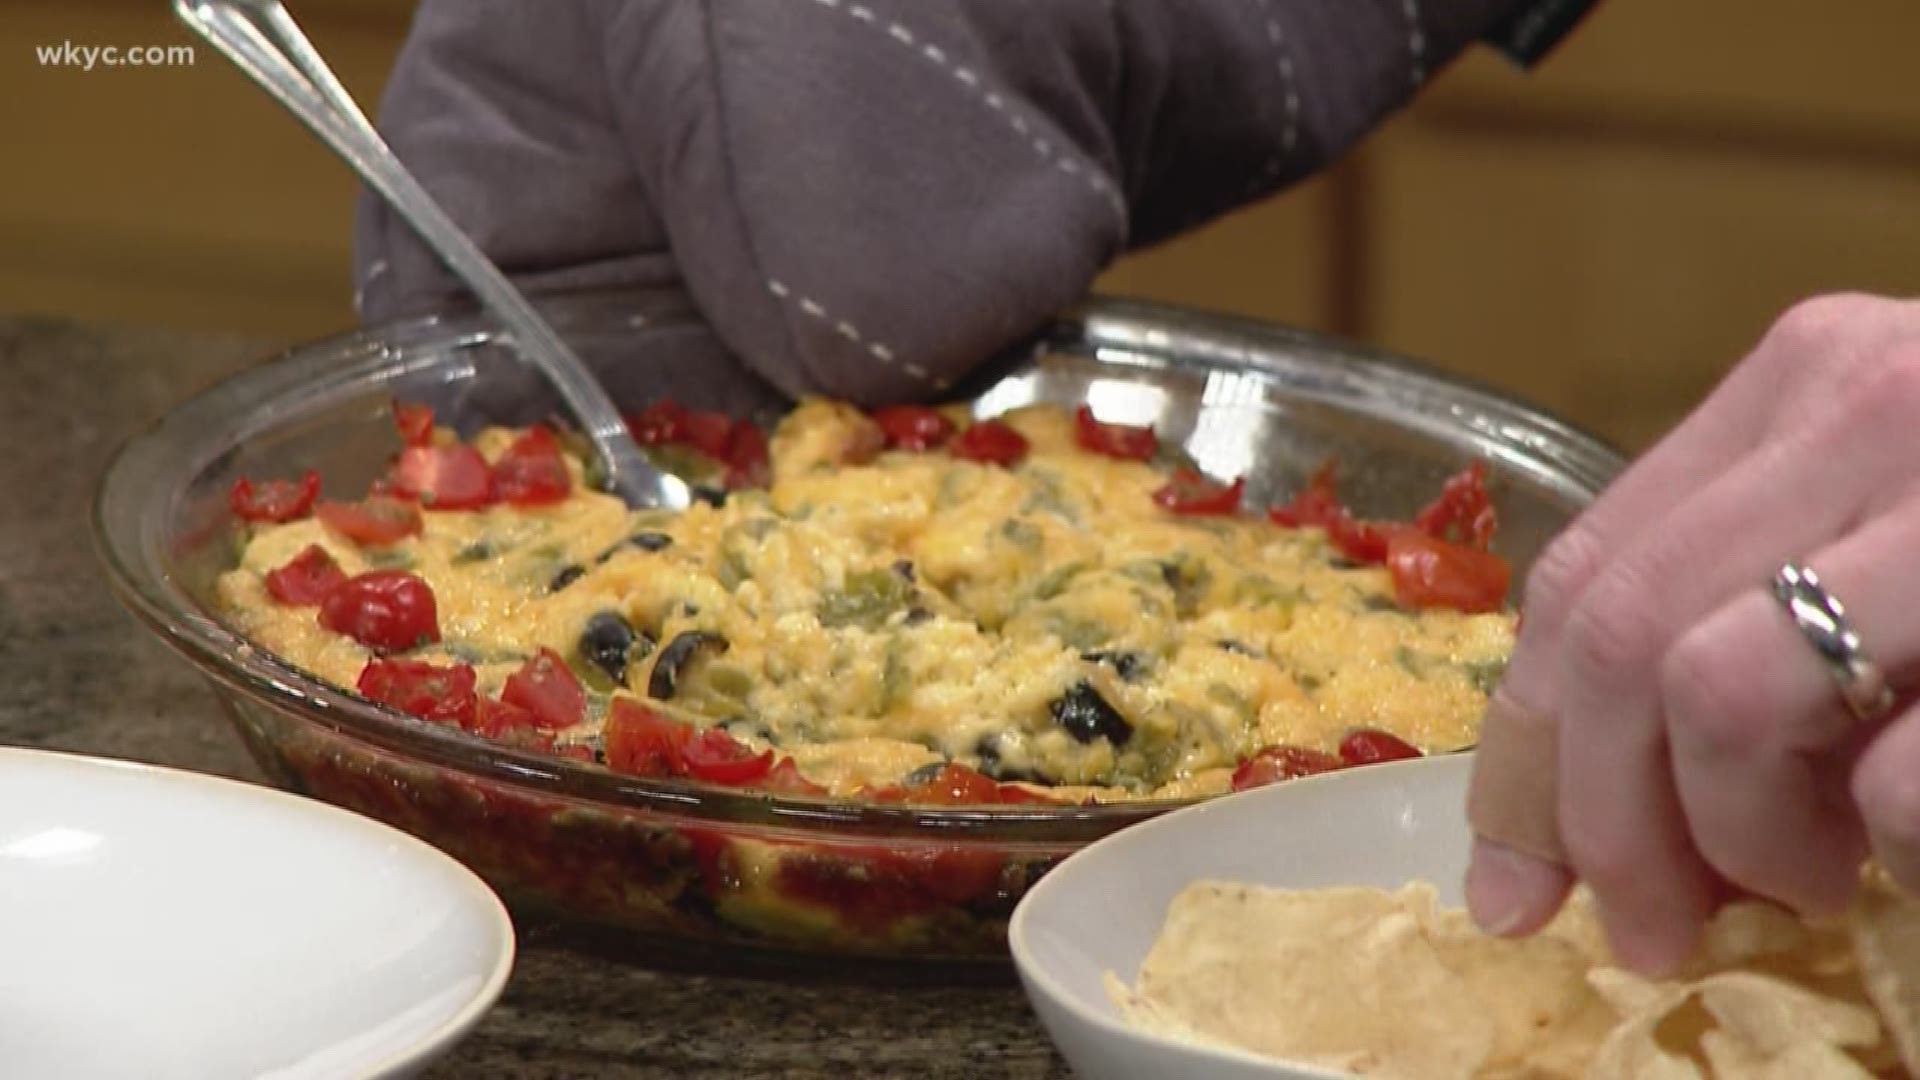 WKYC Morning Show team shares their dip favorite recipes.